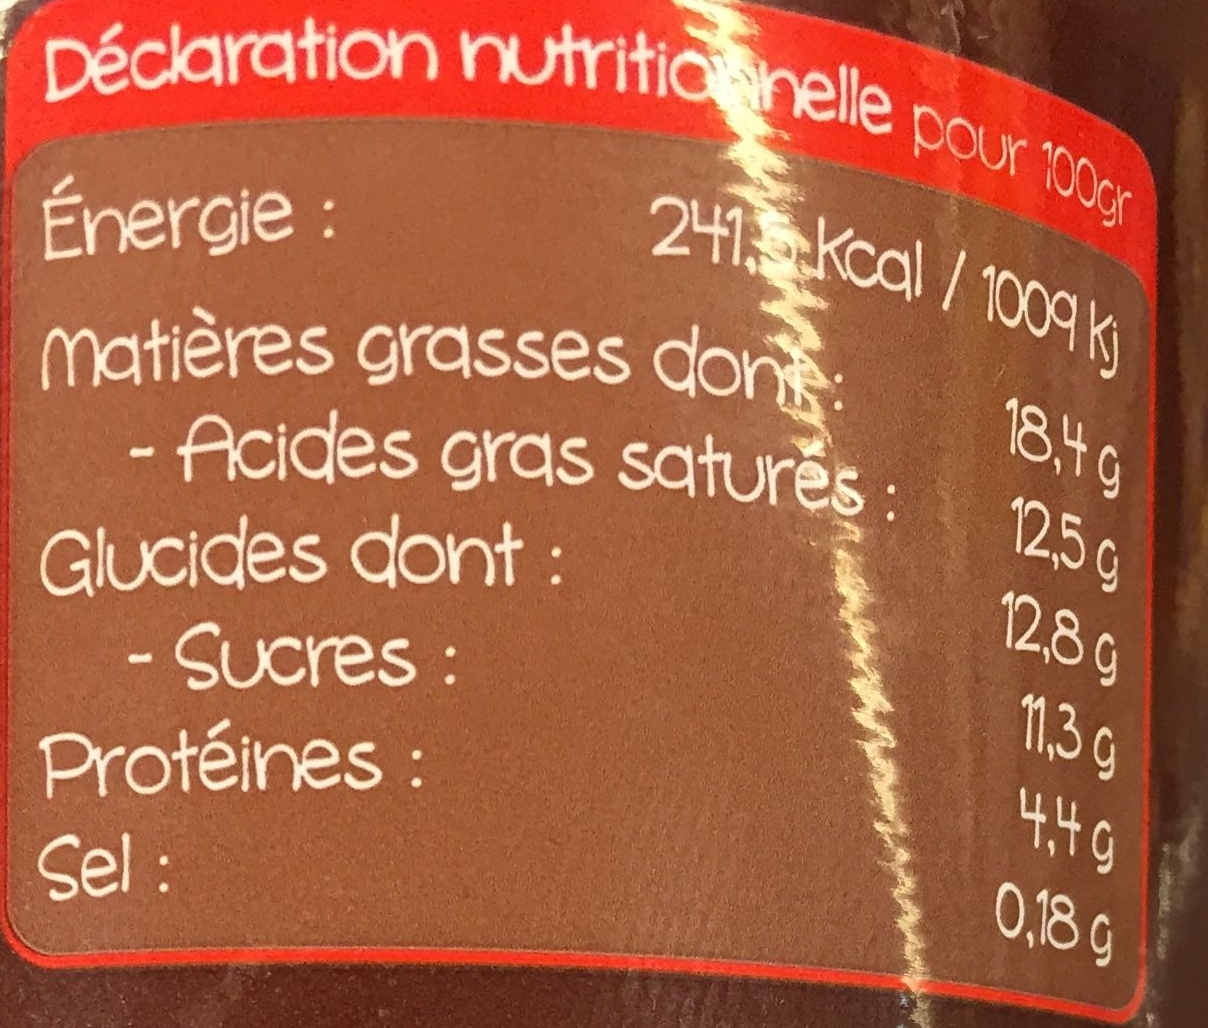 Mousse au chocolat aux oeufs by Norbert - Nutrition facts - fr